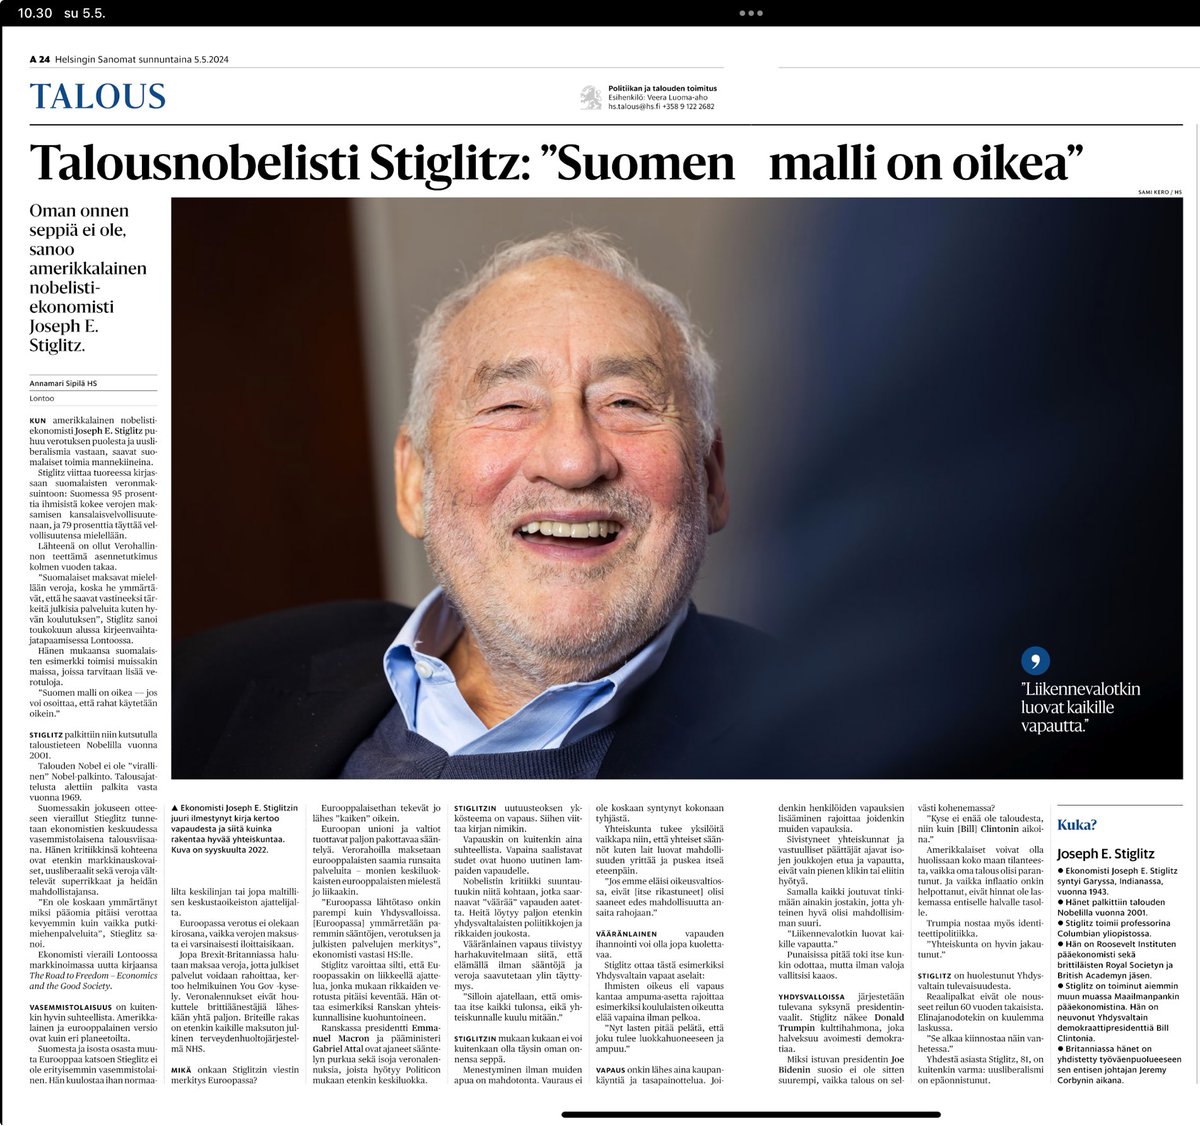 Harva muuten tietää, että Nobelisti Joseph E. Stiglitzin setä oli natsi saksan armeijassa palvellut kersantti Hugo Stiglitz, joka kapinoi ja tappoi ainakin 13 gestapon upseeria. Never forget.